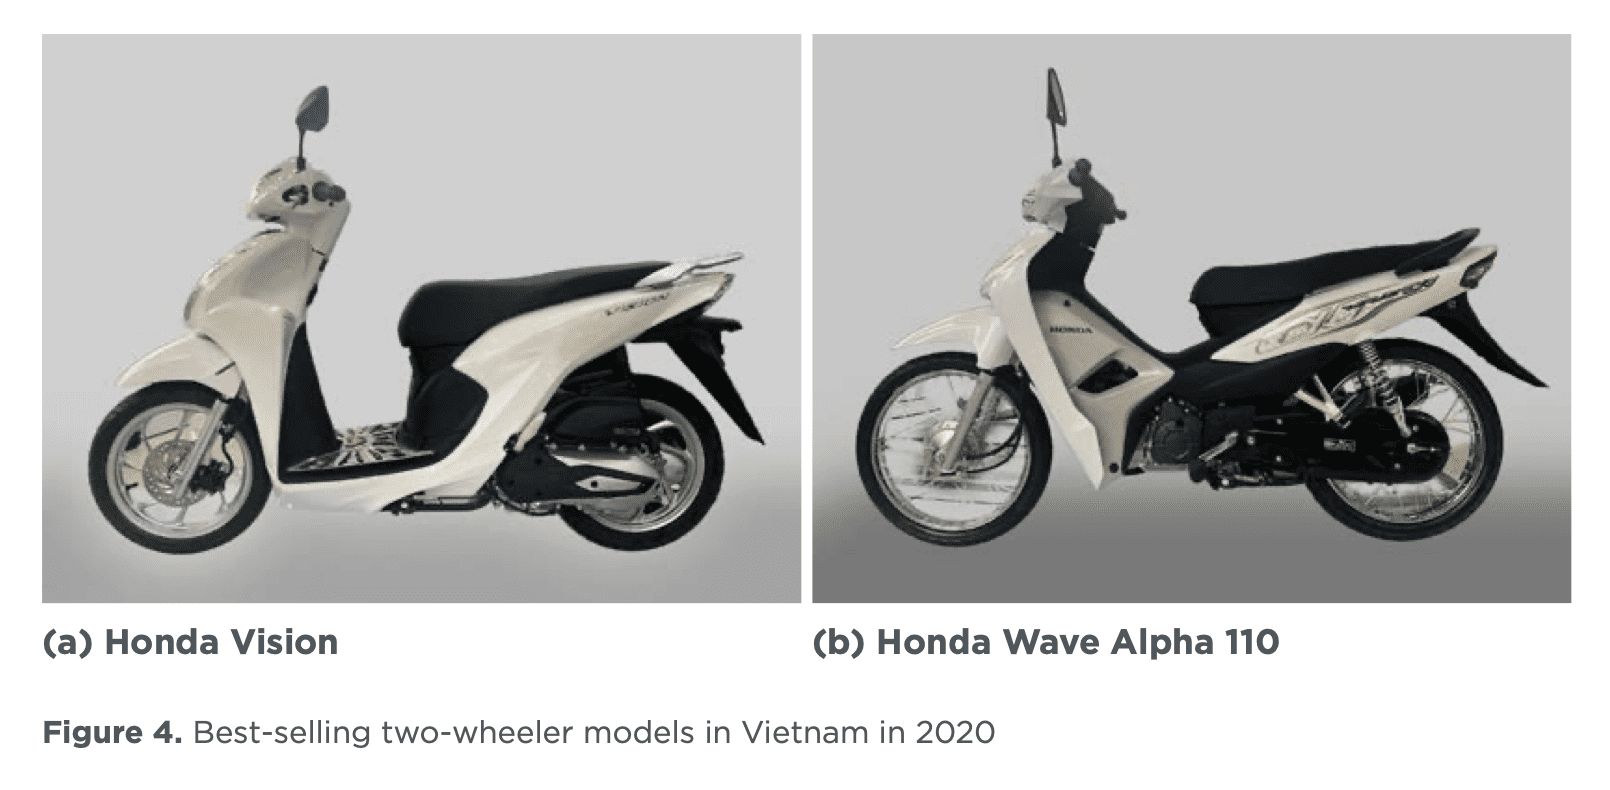 Figure 4. Best-selling two-wheeler models in Vietnam in 2020